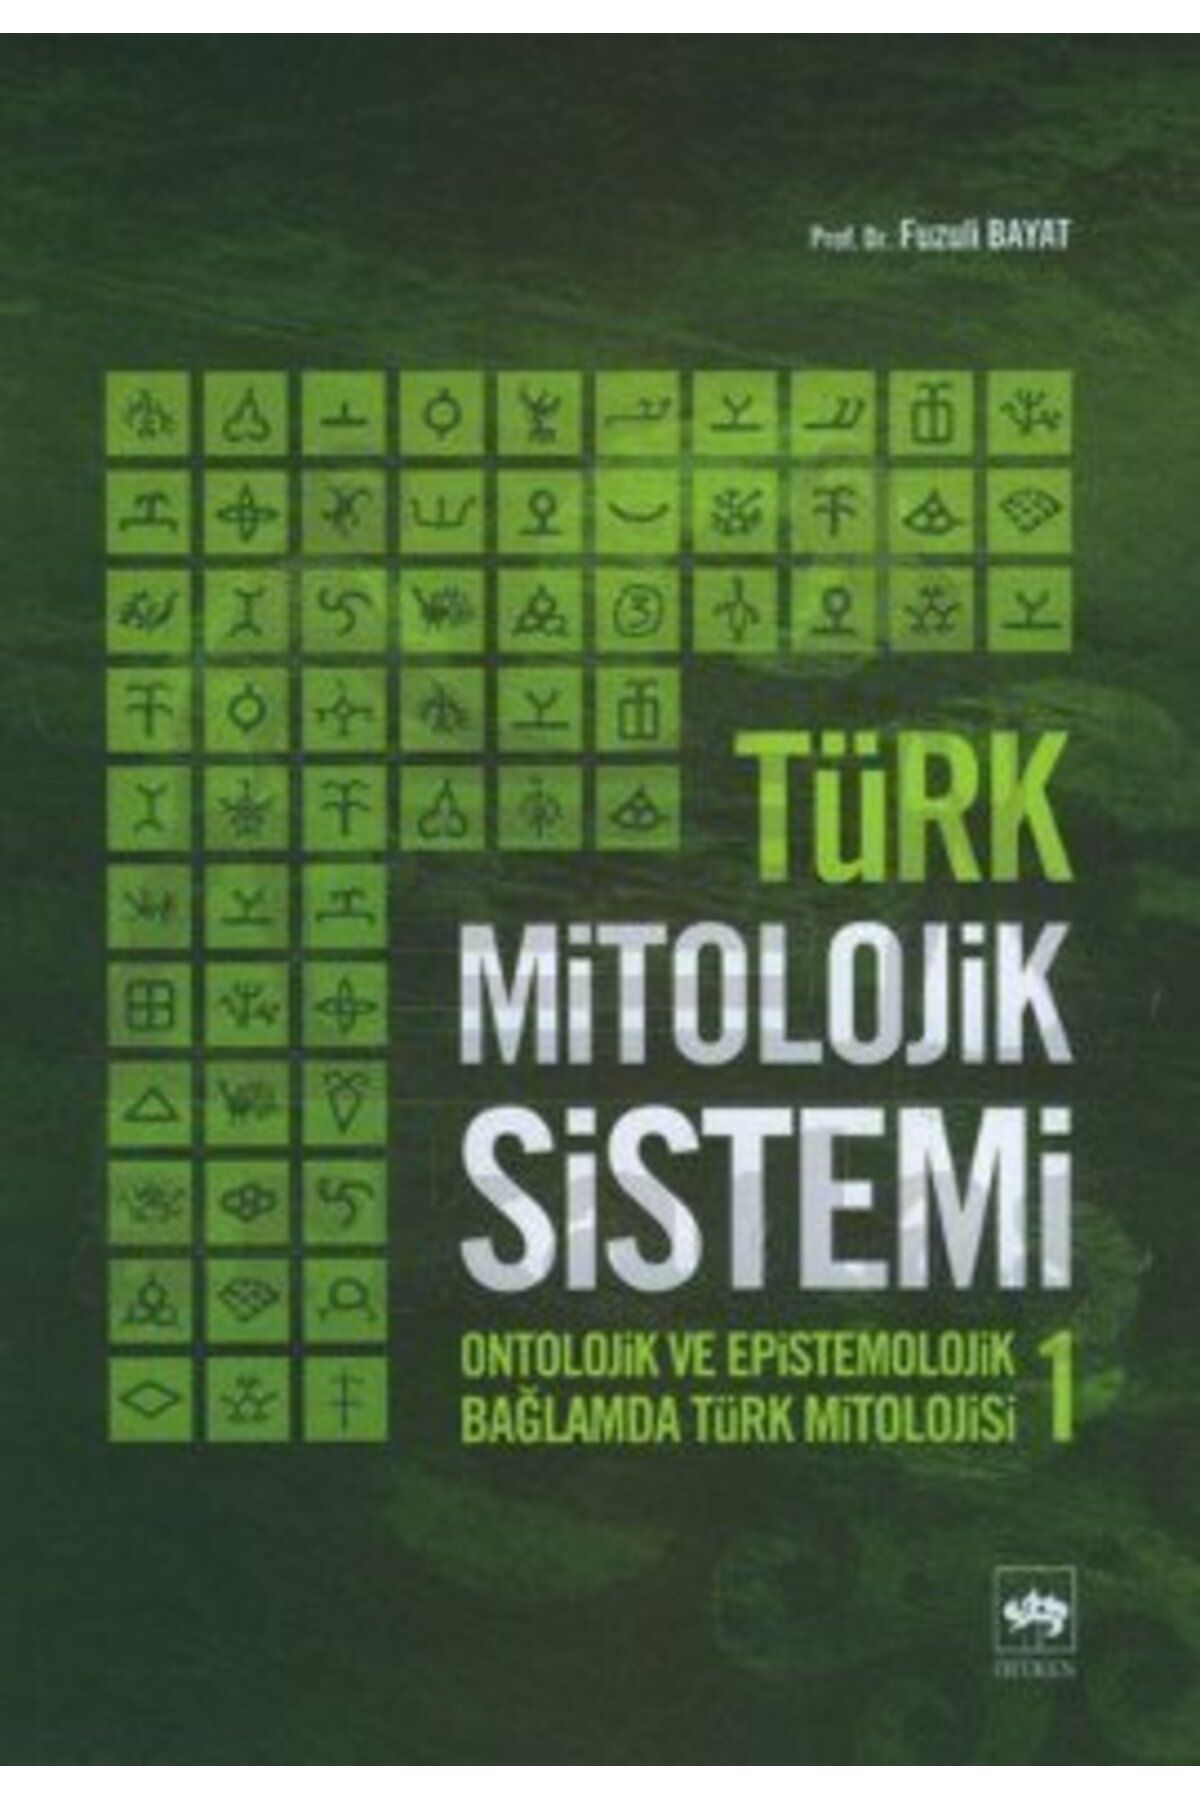 Ötüken Neşriyat Türk Mitolojik Sistemi 1